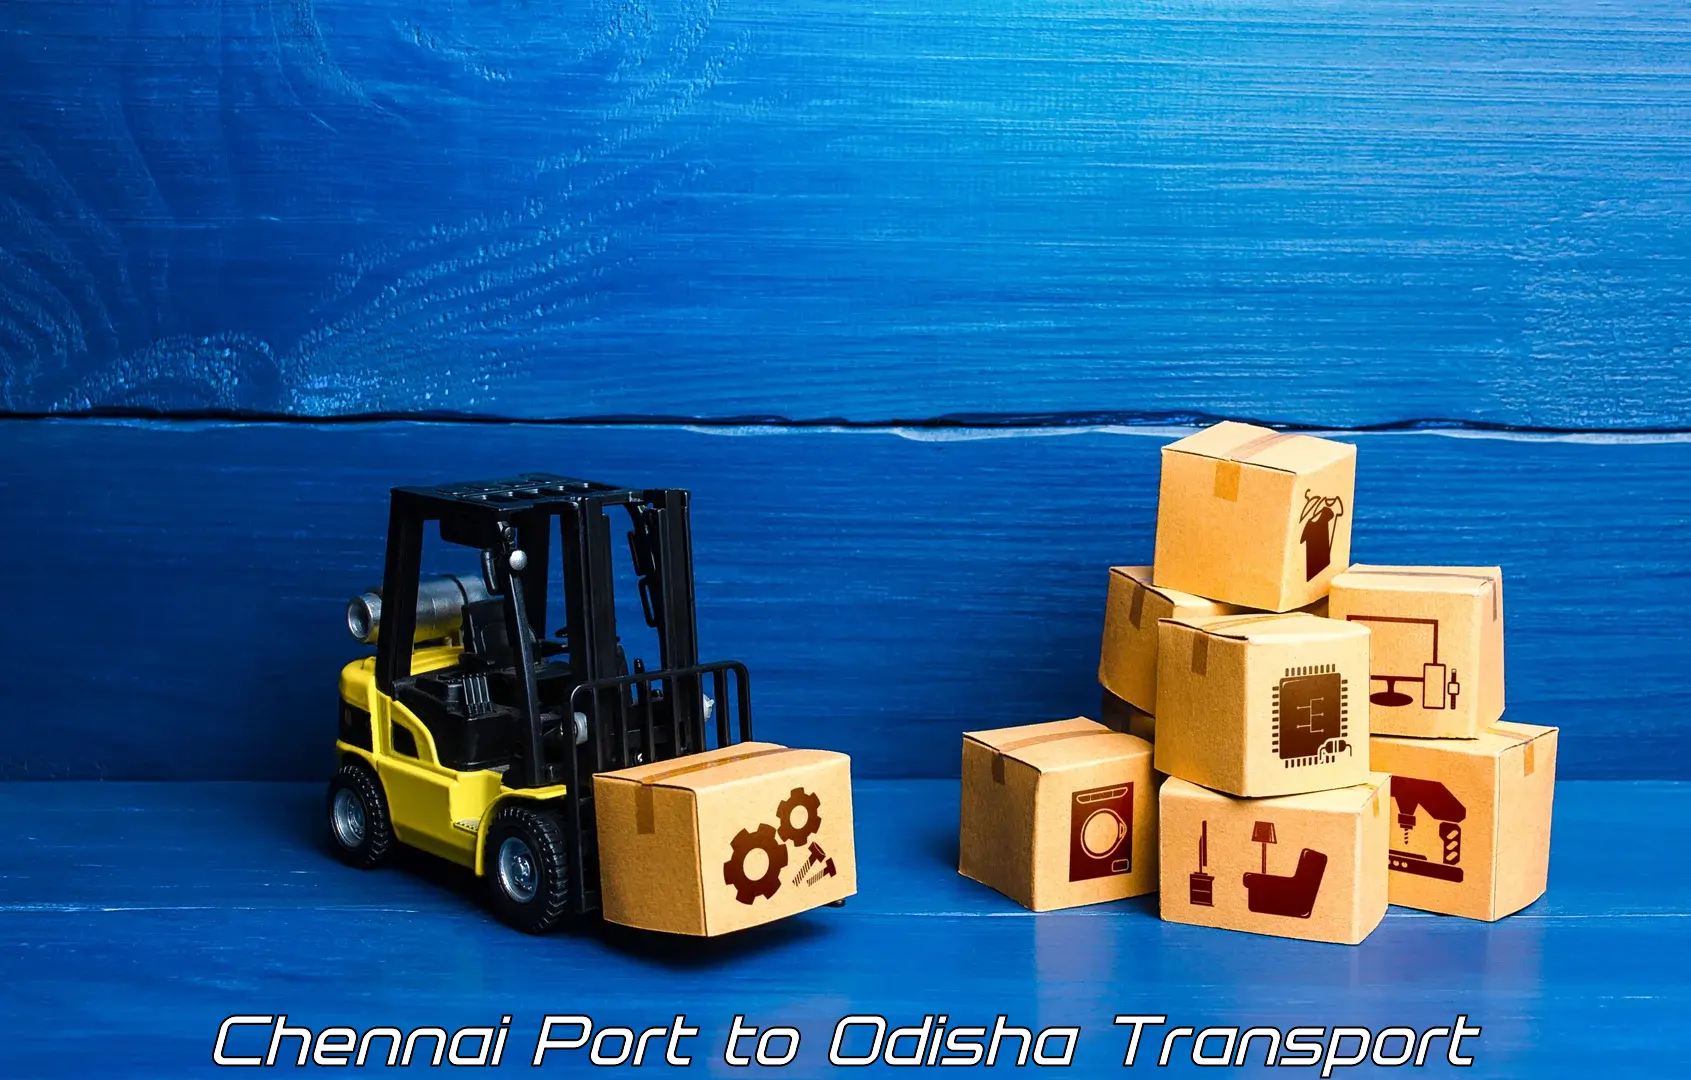 Container transport service Chennai Port to Mahakalapada